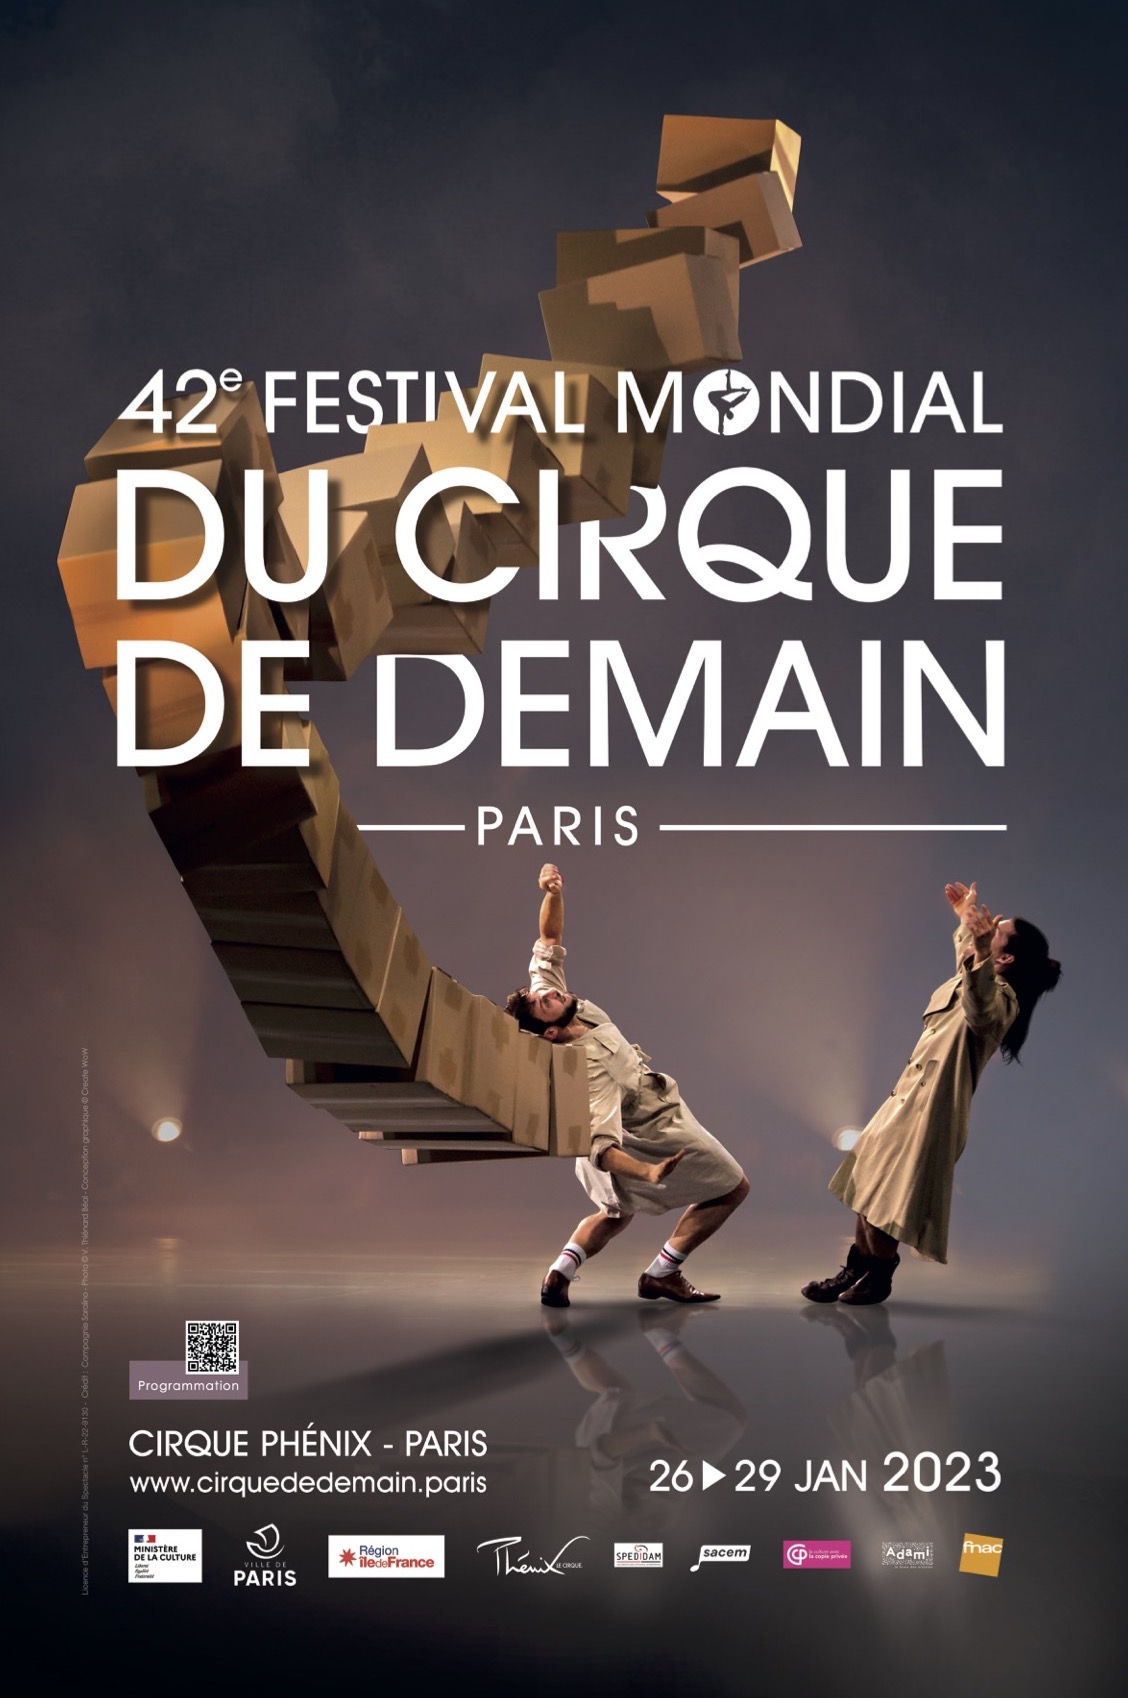 42nd Festival Mondial du Cirque de Demain